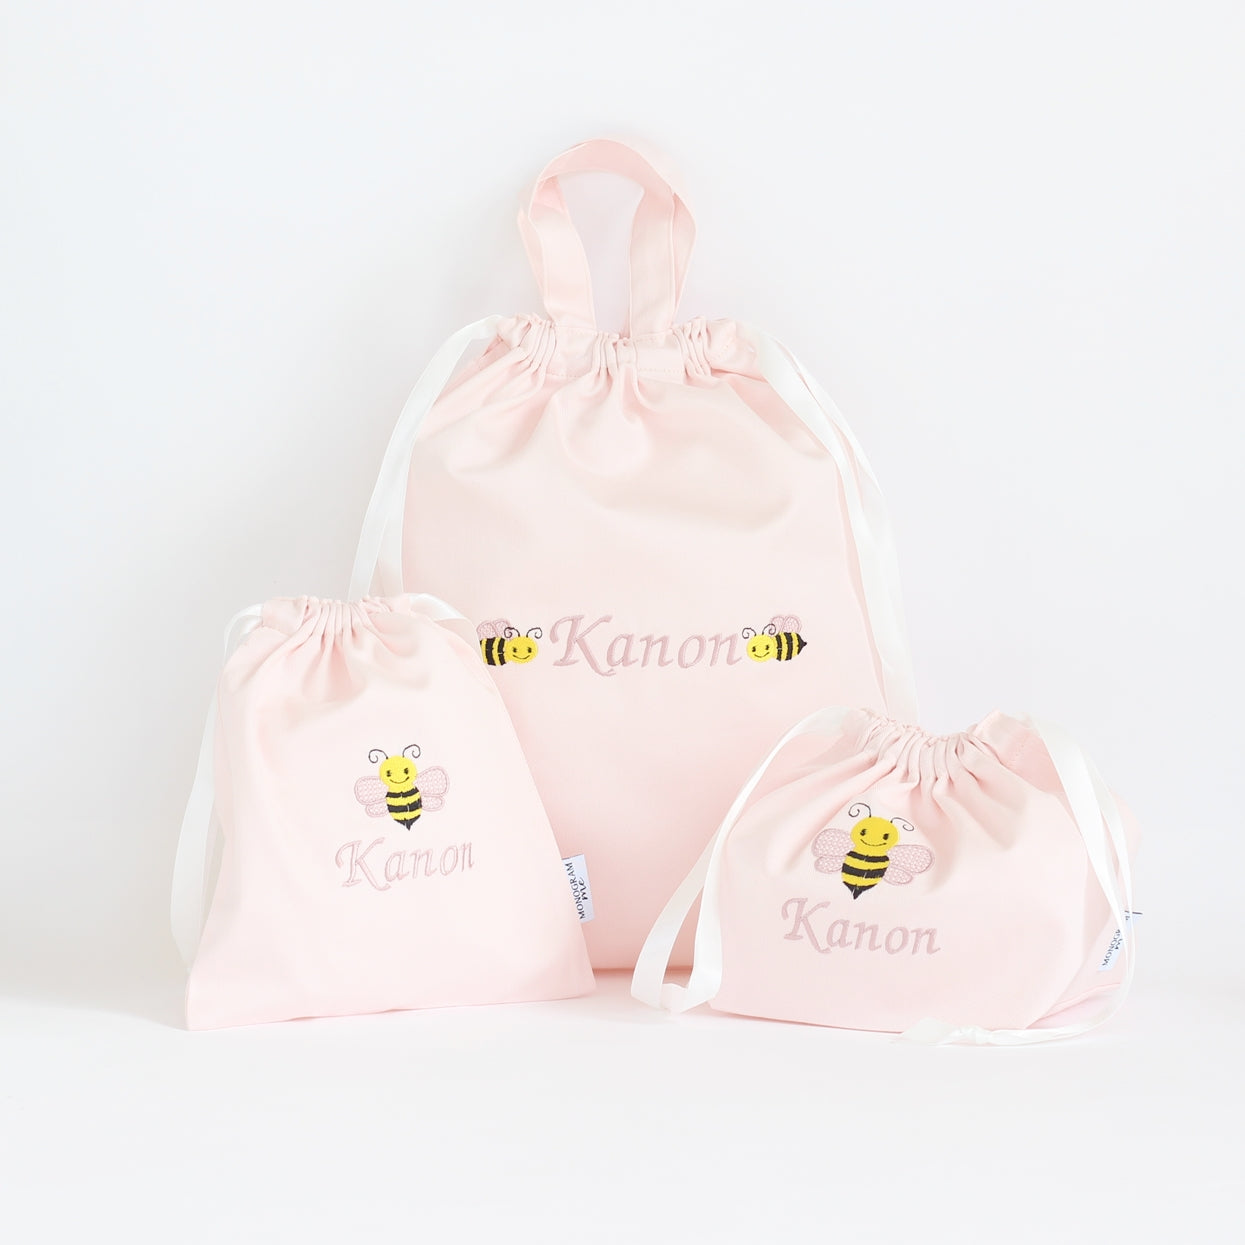 ミツバチの名入れ巾着袋3種類セット